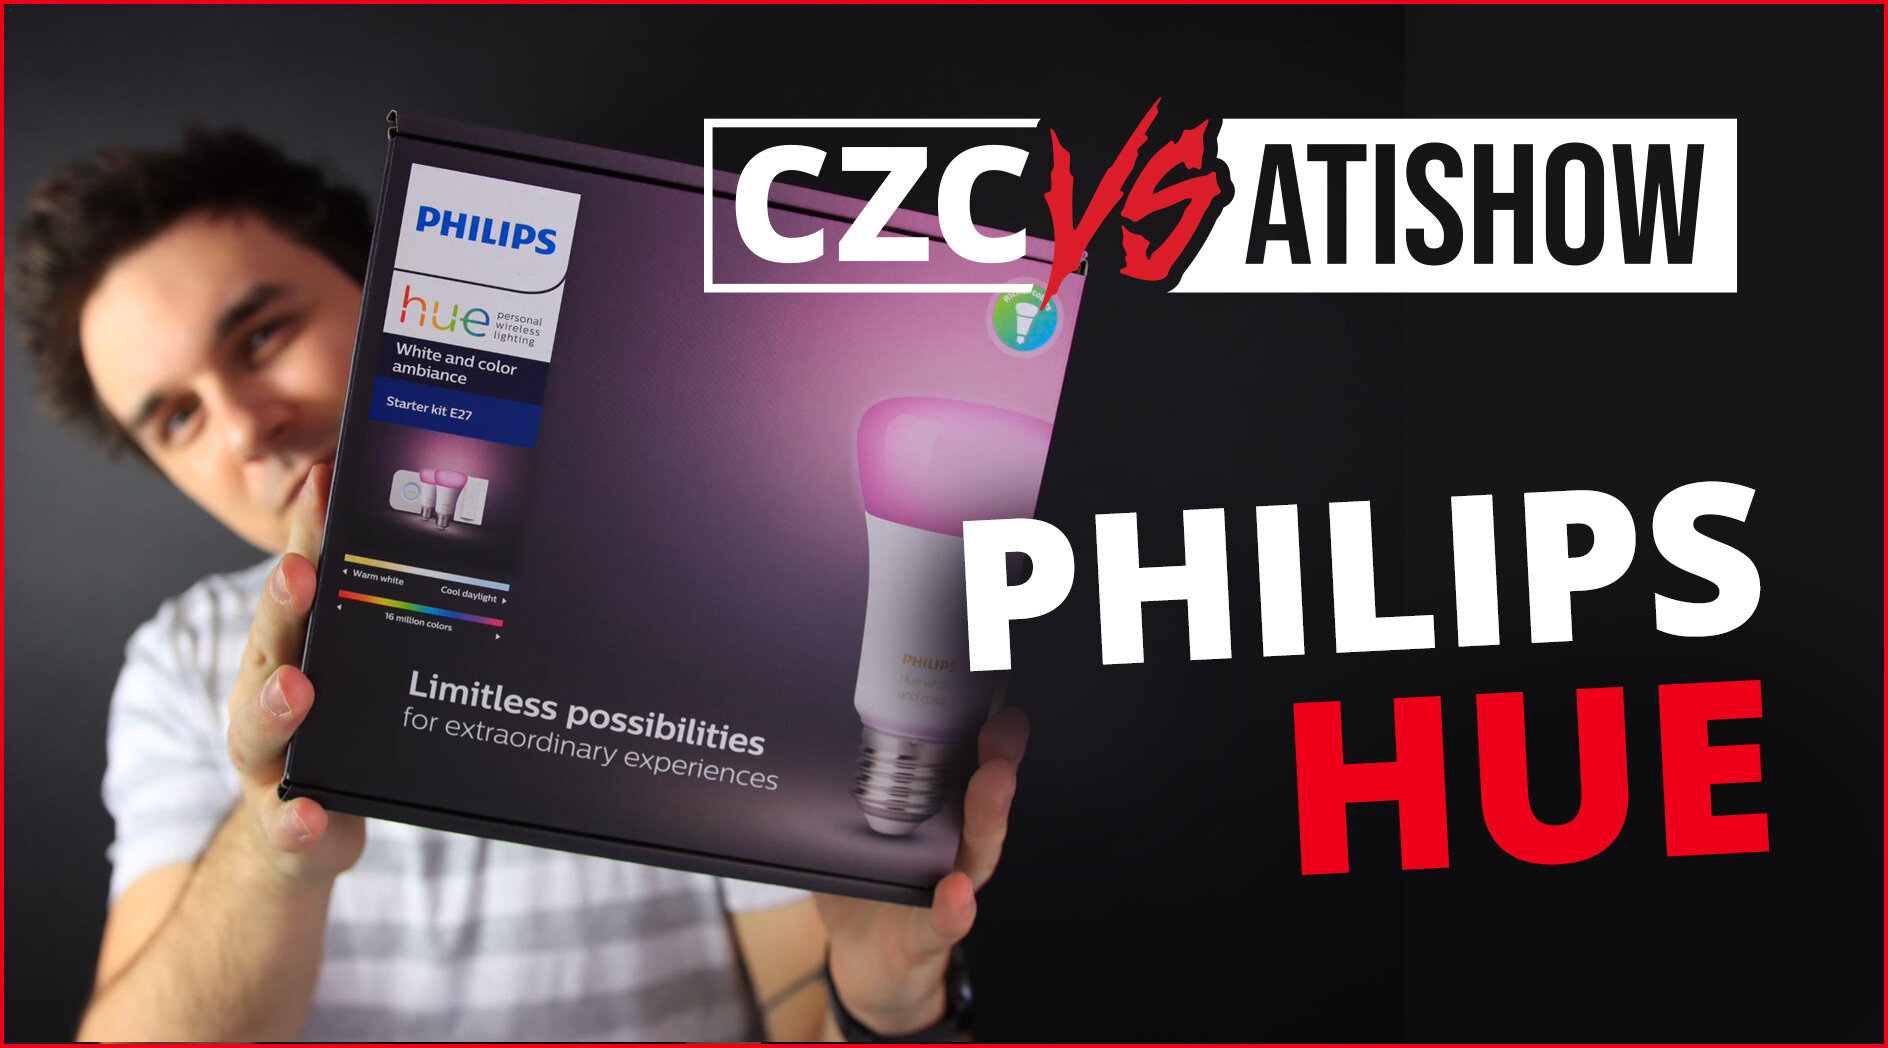 Atmosféra v domácnosti je... bude dobrá - Philips Hue | CZC vs AtiShow #39